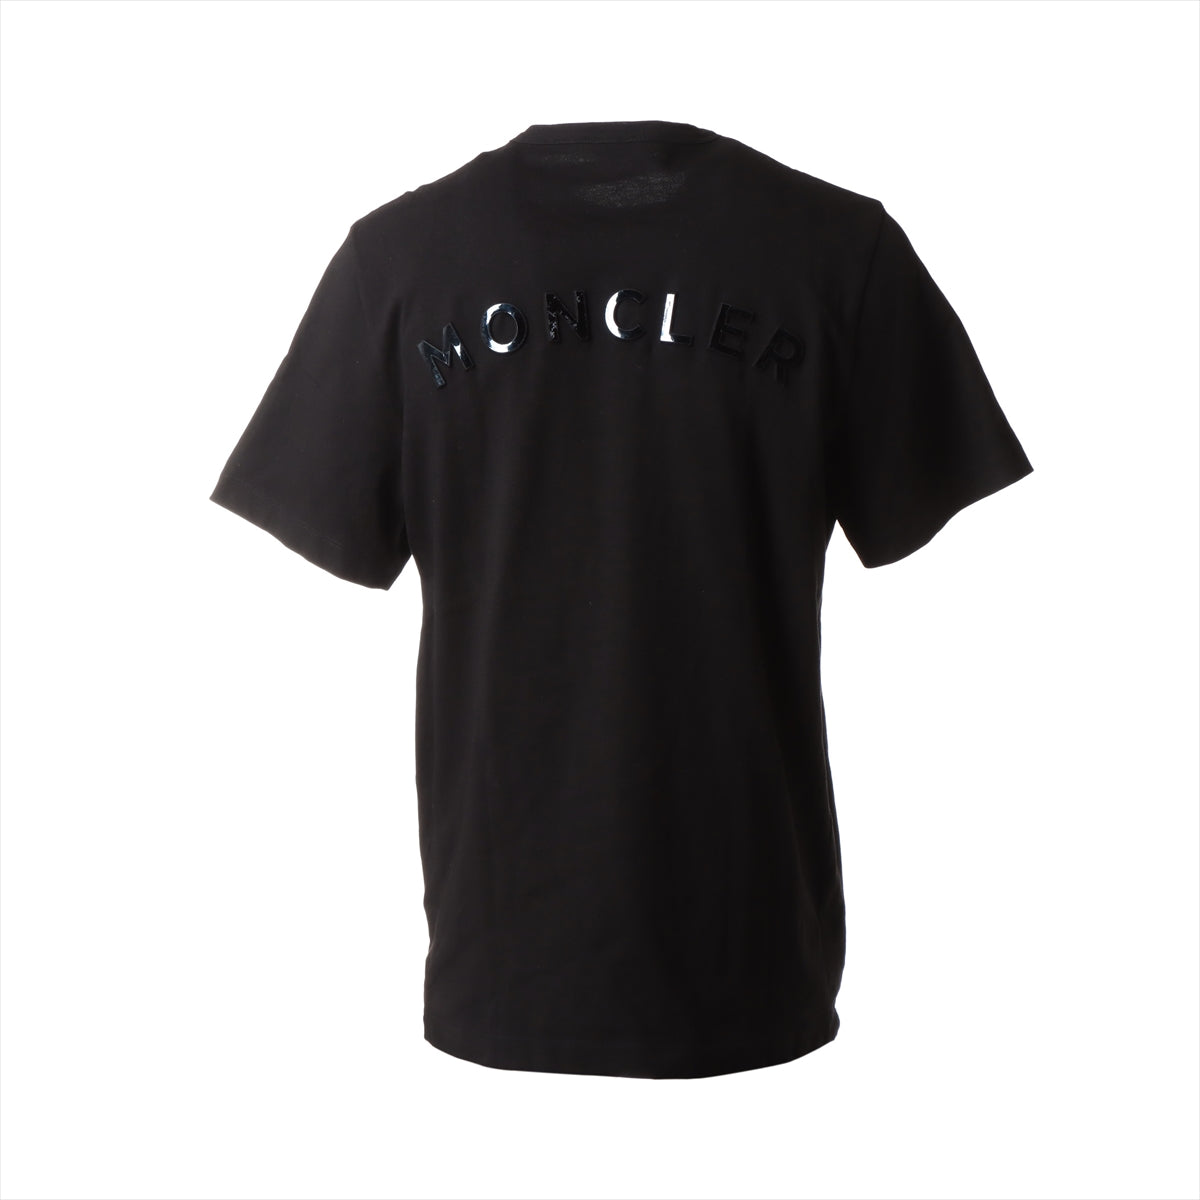 ●モンクレール ビッグロゴ 半袖 コットン Tシャツ Mサイズ 黒 20SS20SS